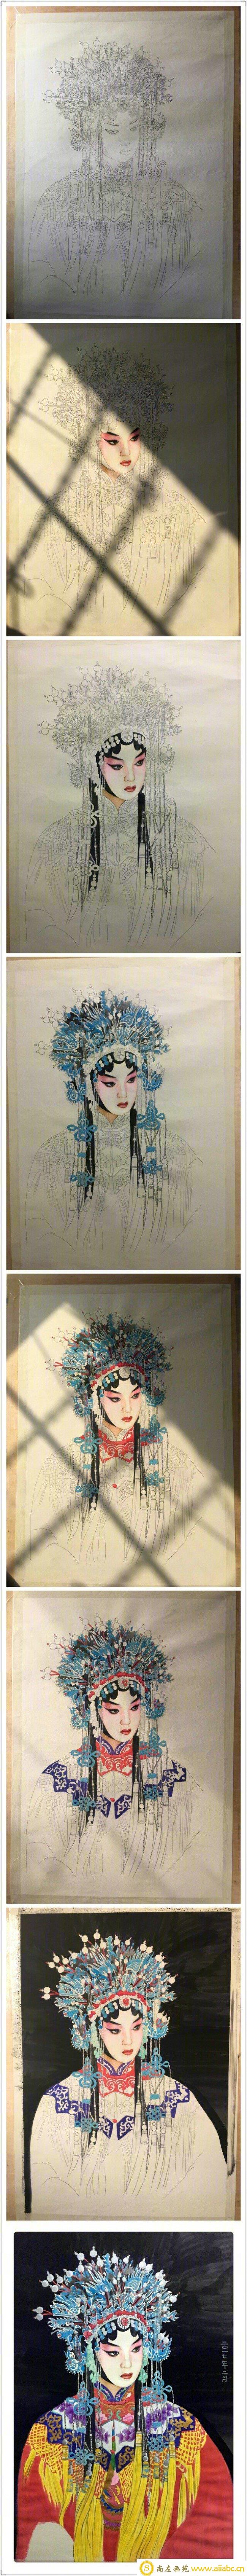 超美古装彩铅和水彩上色京剧戏服美女教程图片 根据真人照片写实 唯美意境_